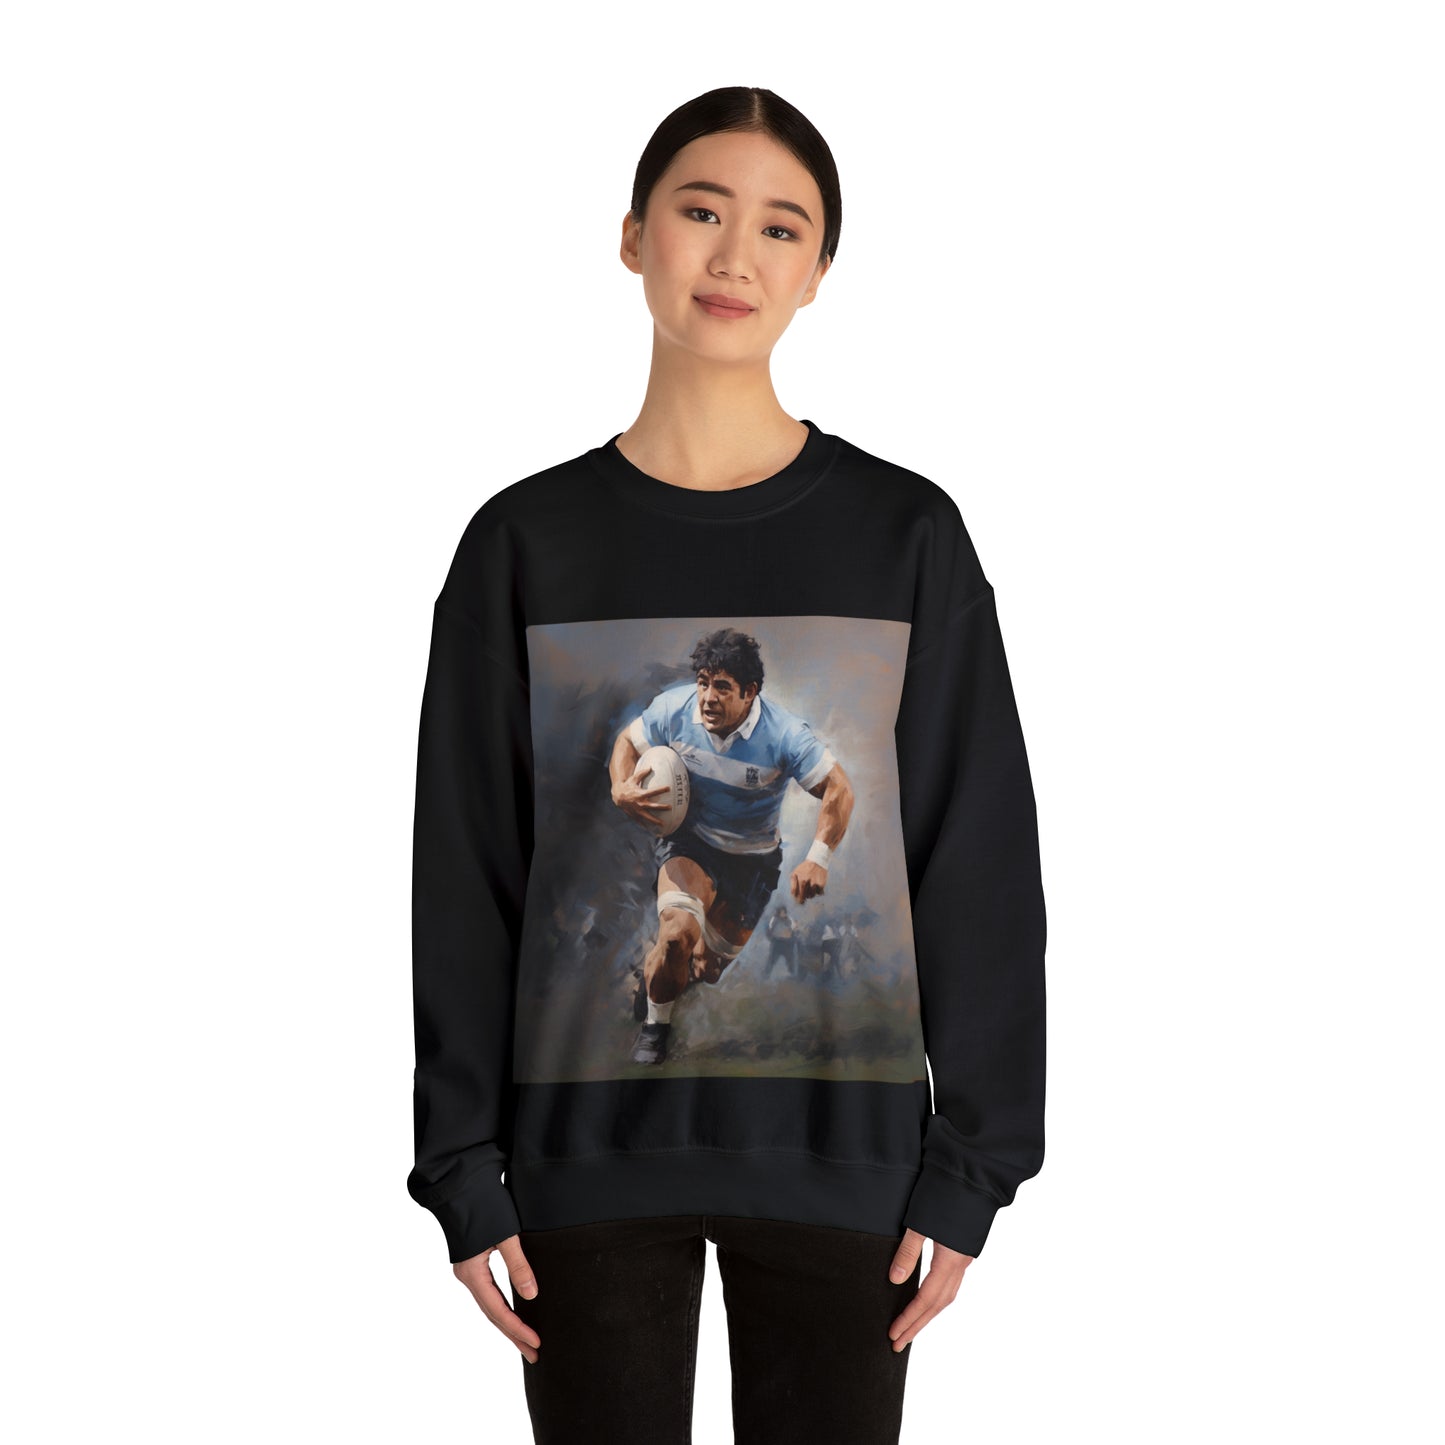 Rugby Maradona - black sweatshirt